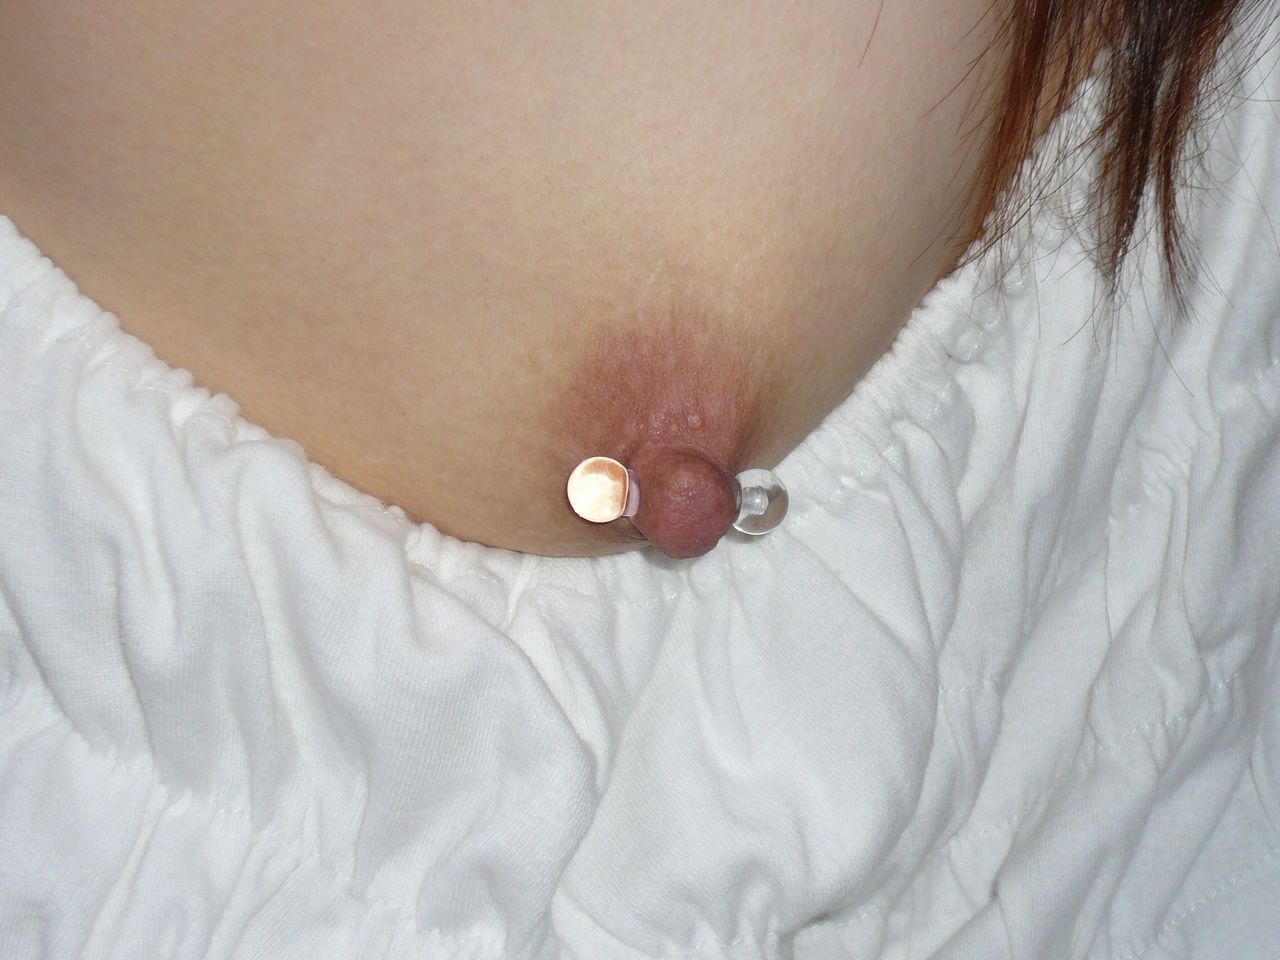 Gauged nipple piercing